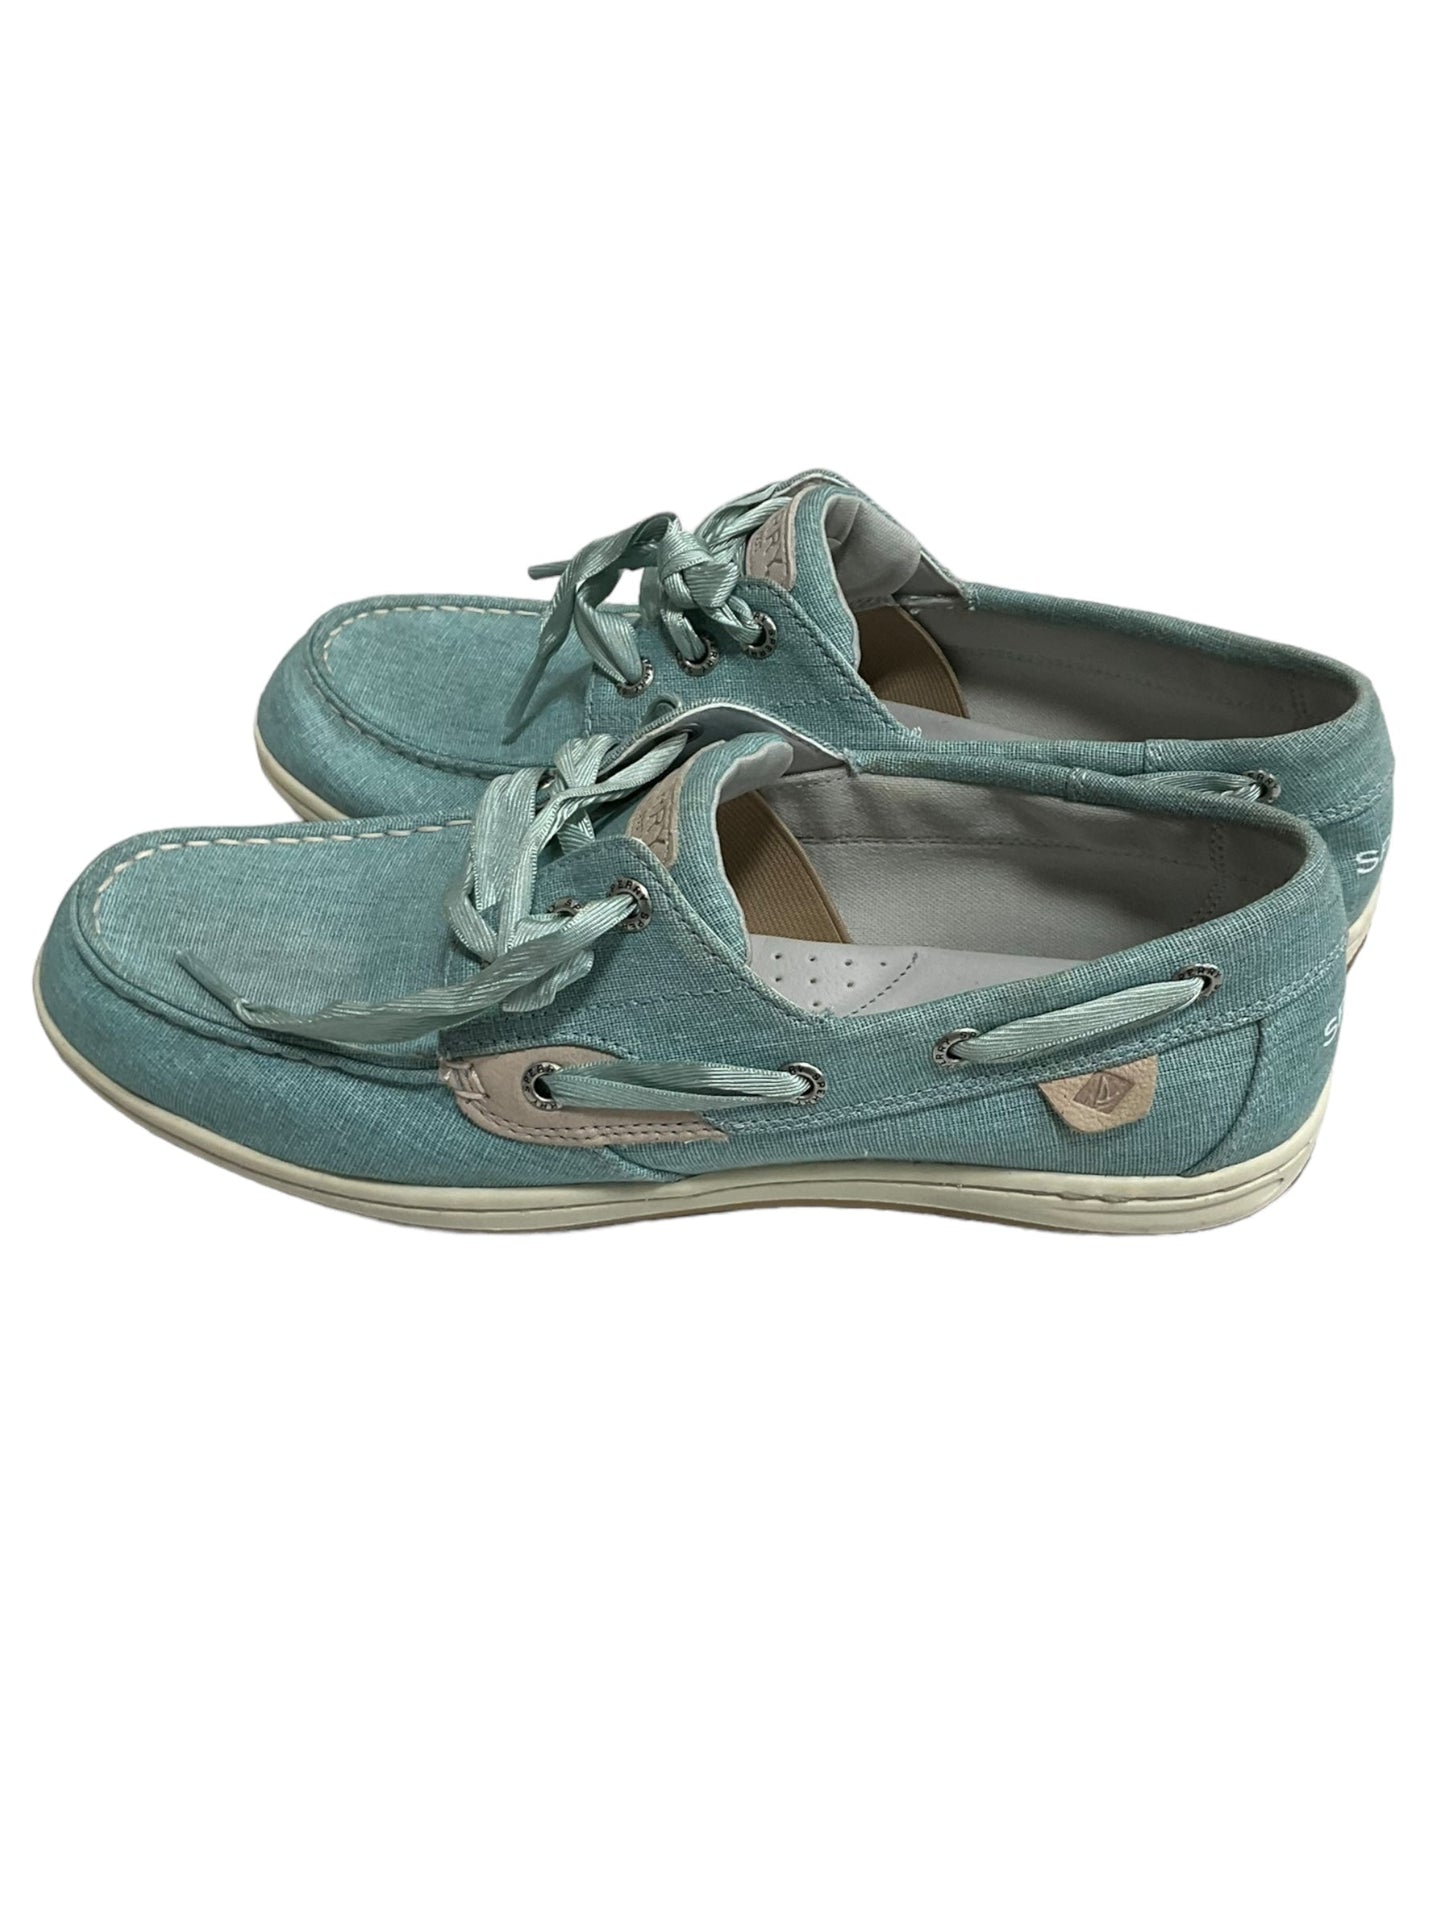 Aqua Shoes Flats Sperry, Size 9.5